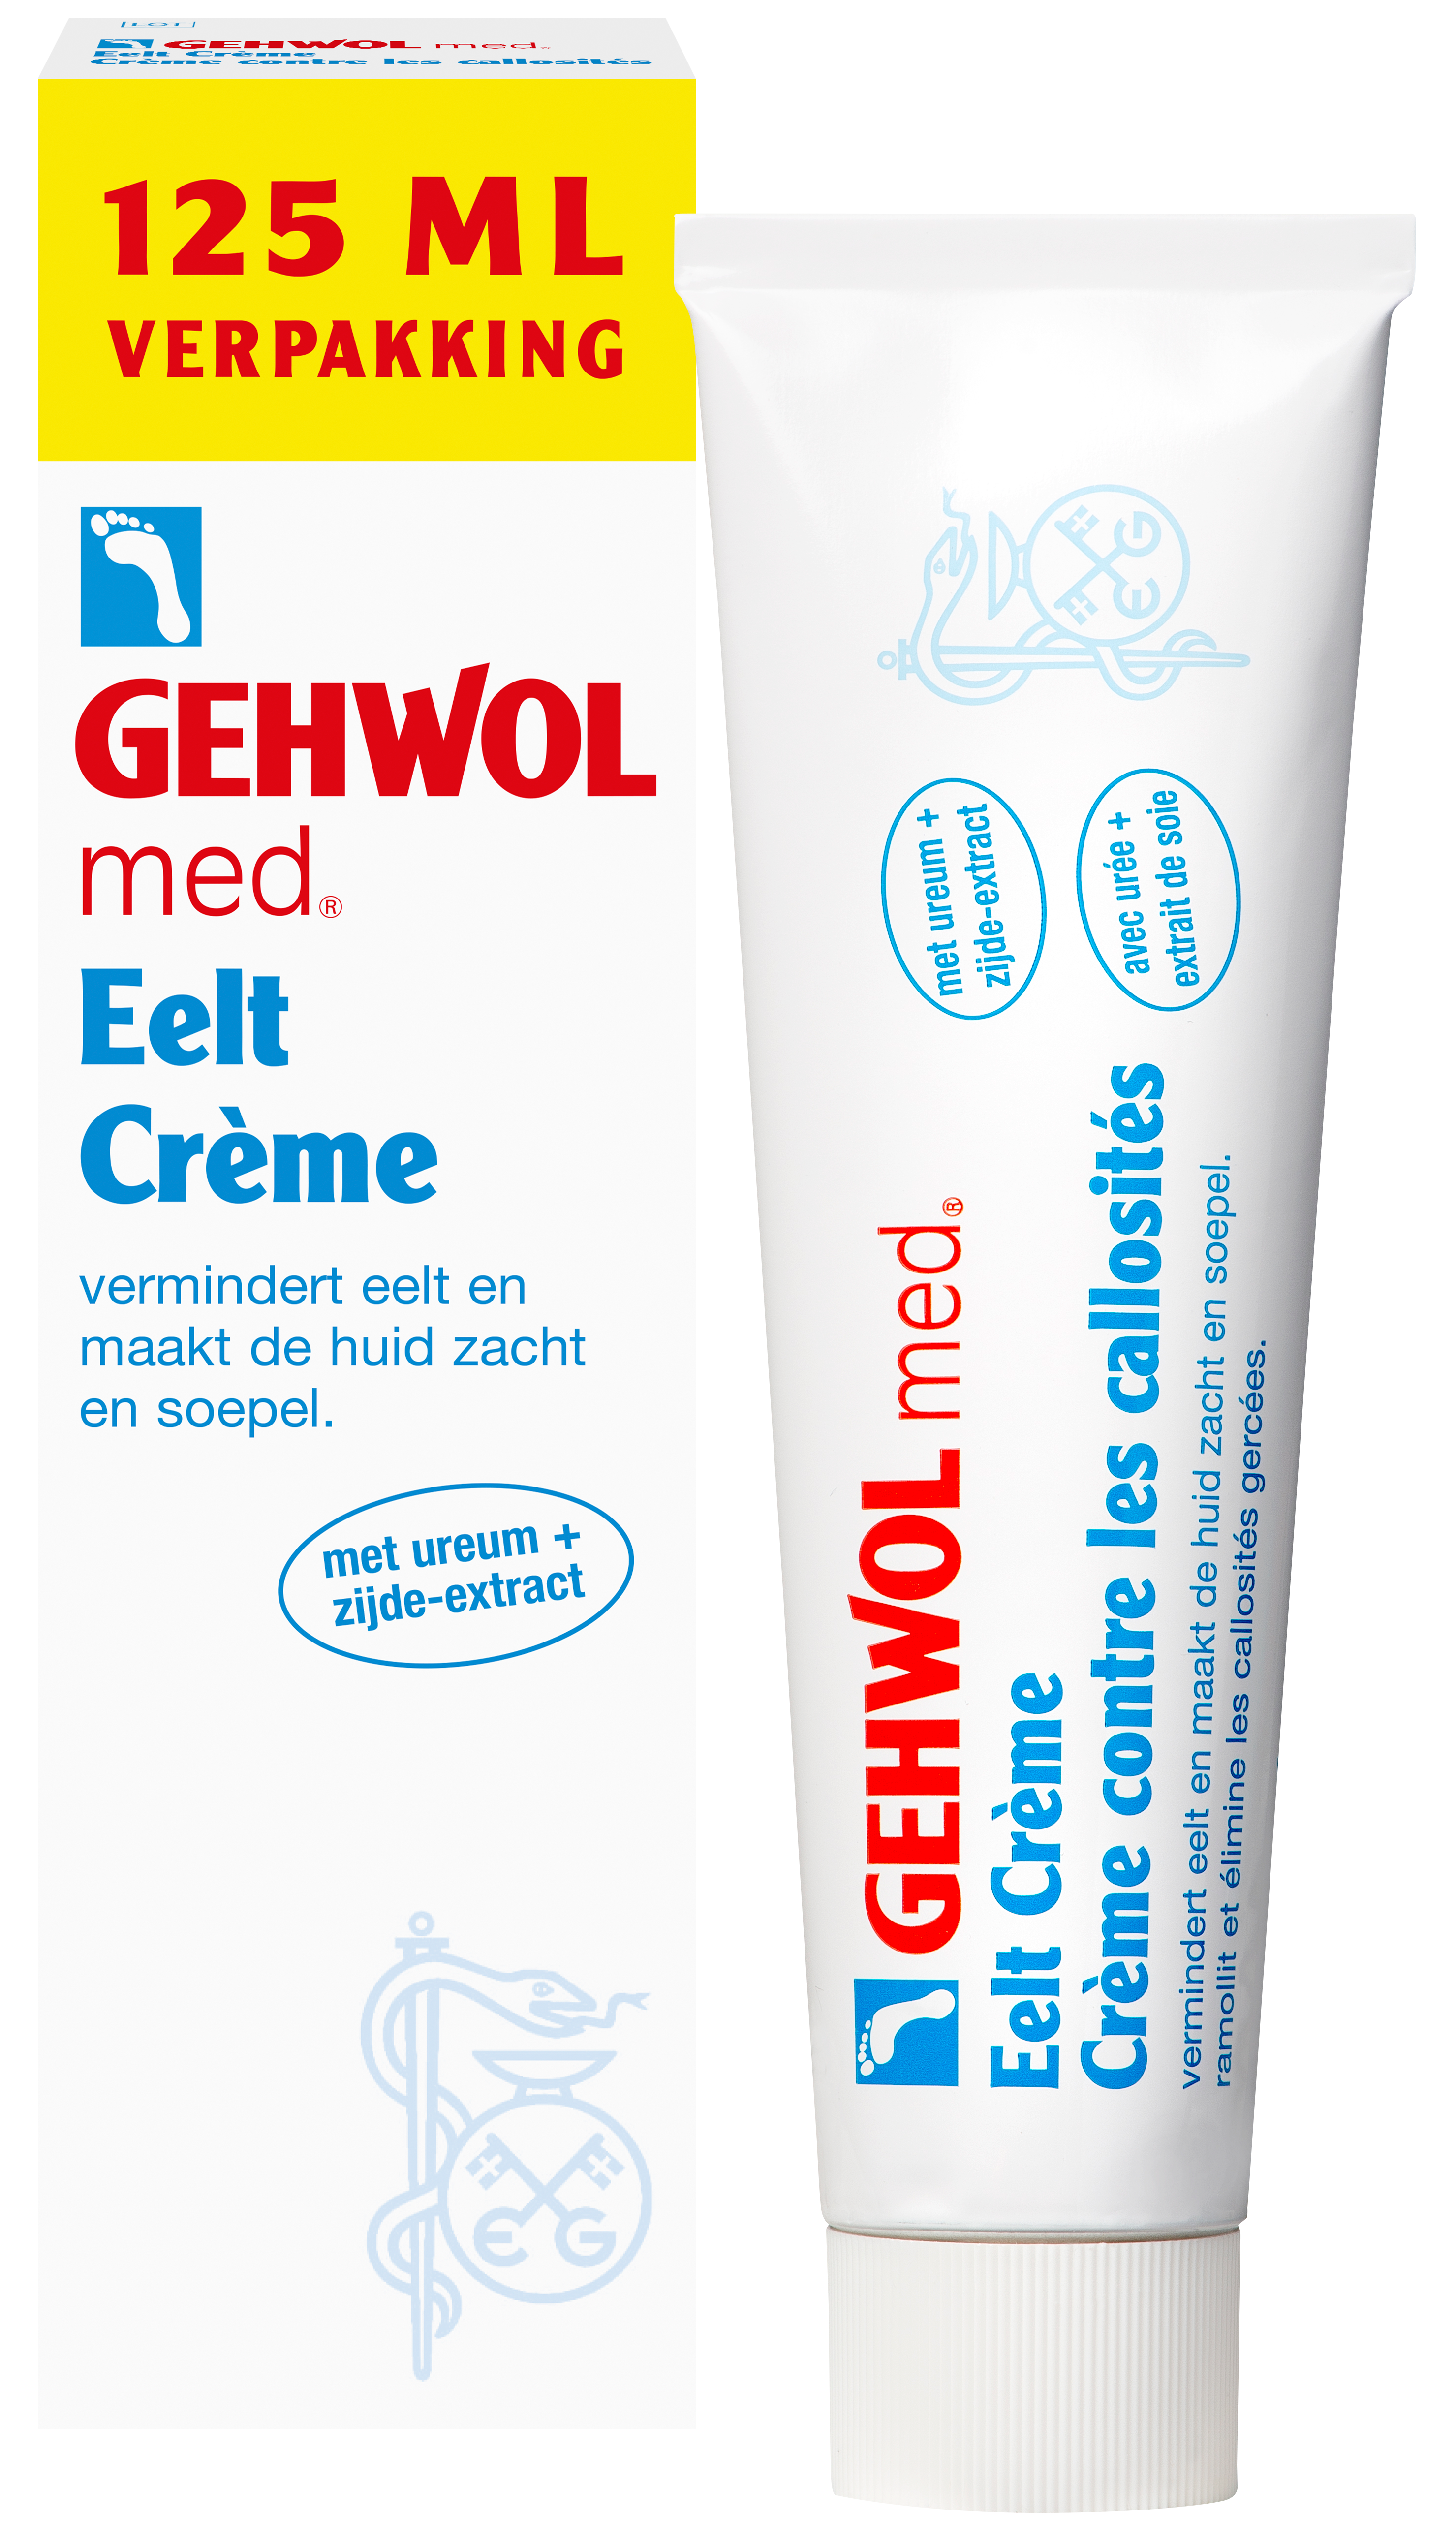 rommel grip Previs site Eelt Crème | Gehwol